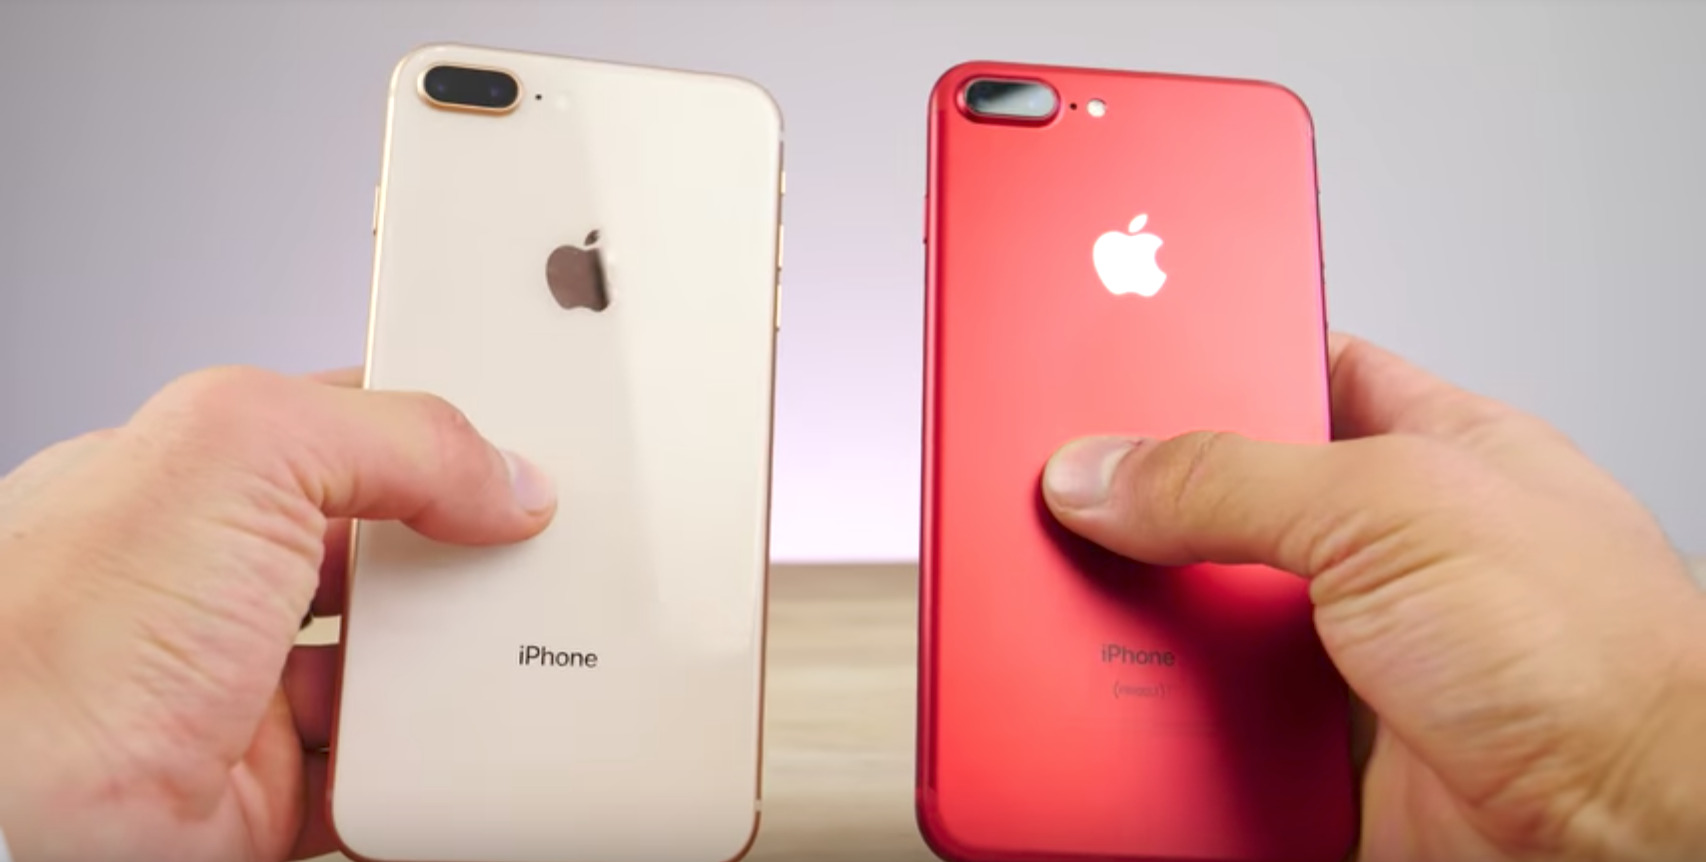 apple-iphone-8-vs-iphone-7-specs-comparison